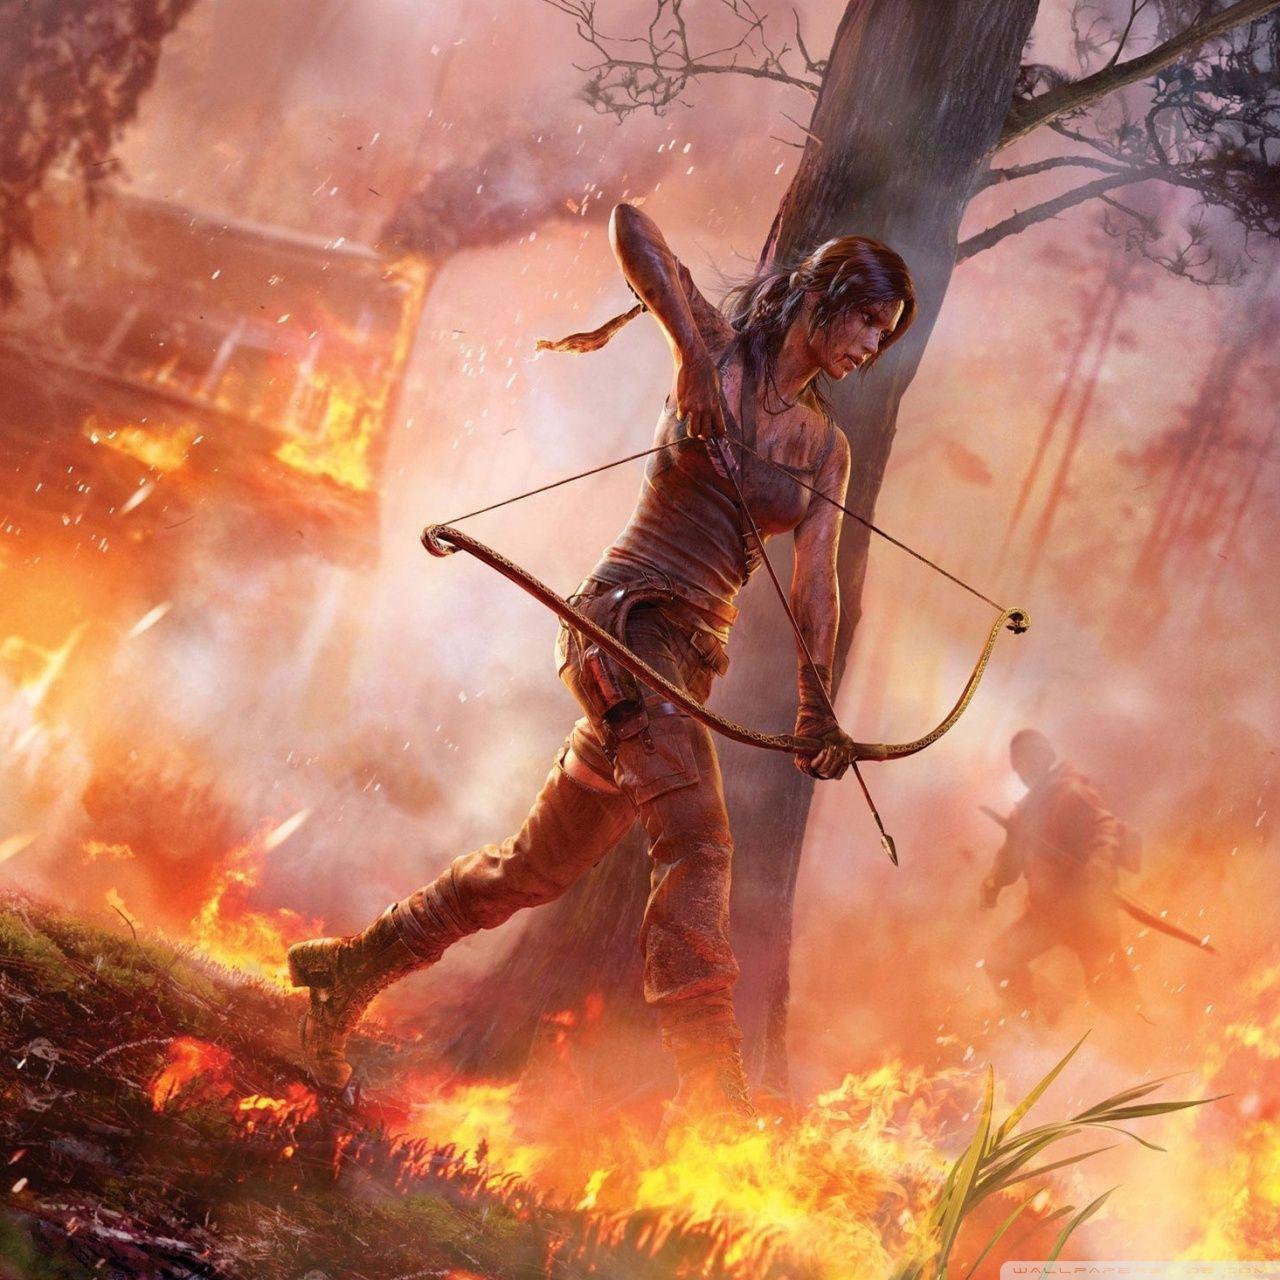 Tomb Raider (2013) HD desktop wallpaper, Widescreen, High